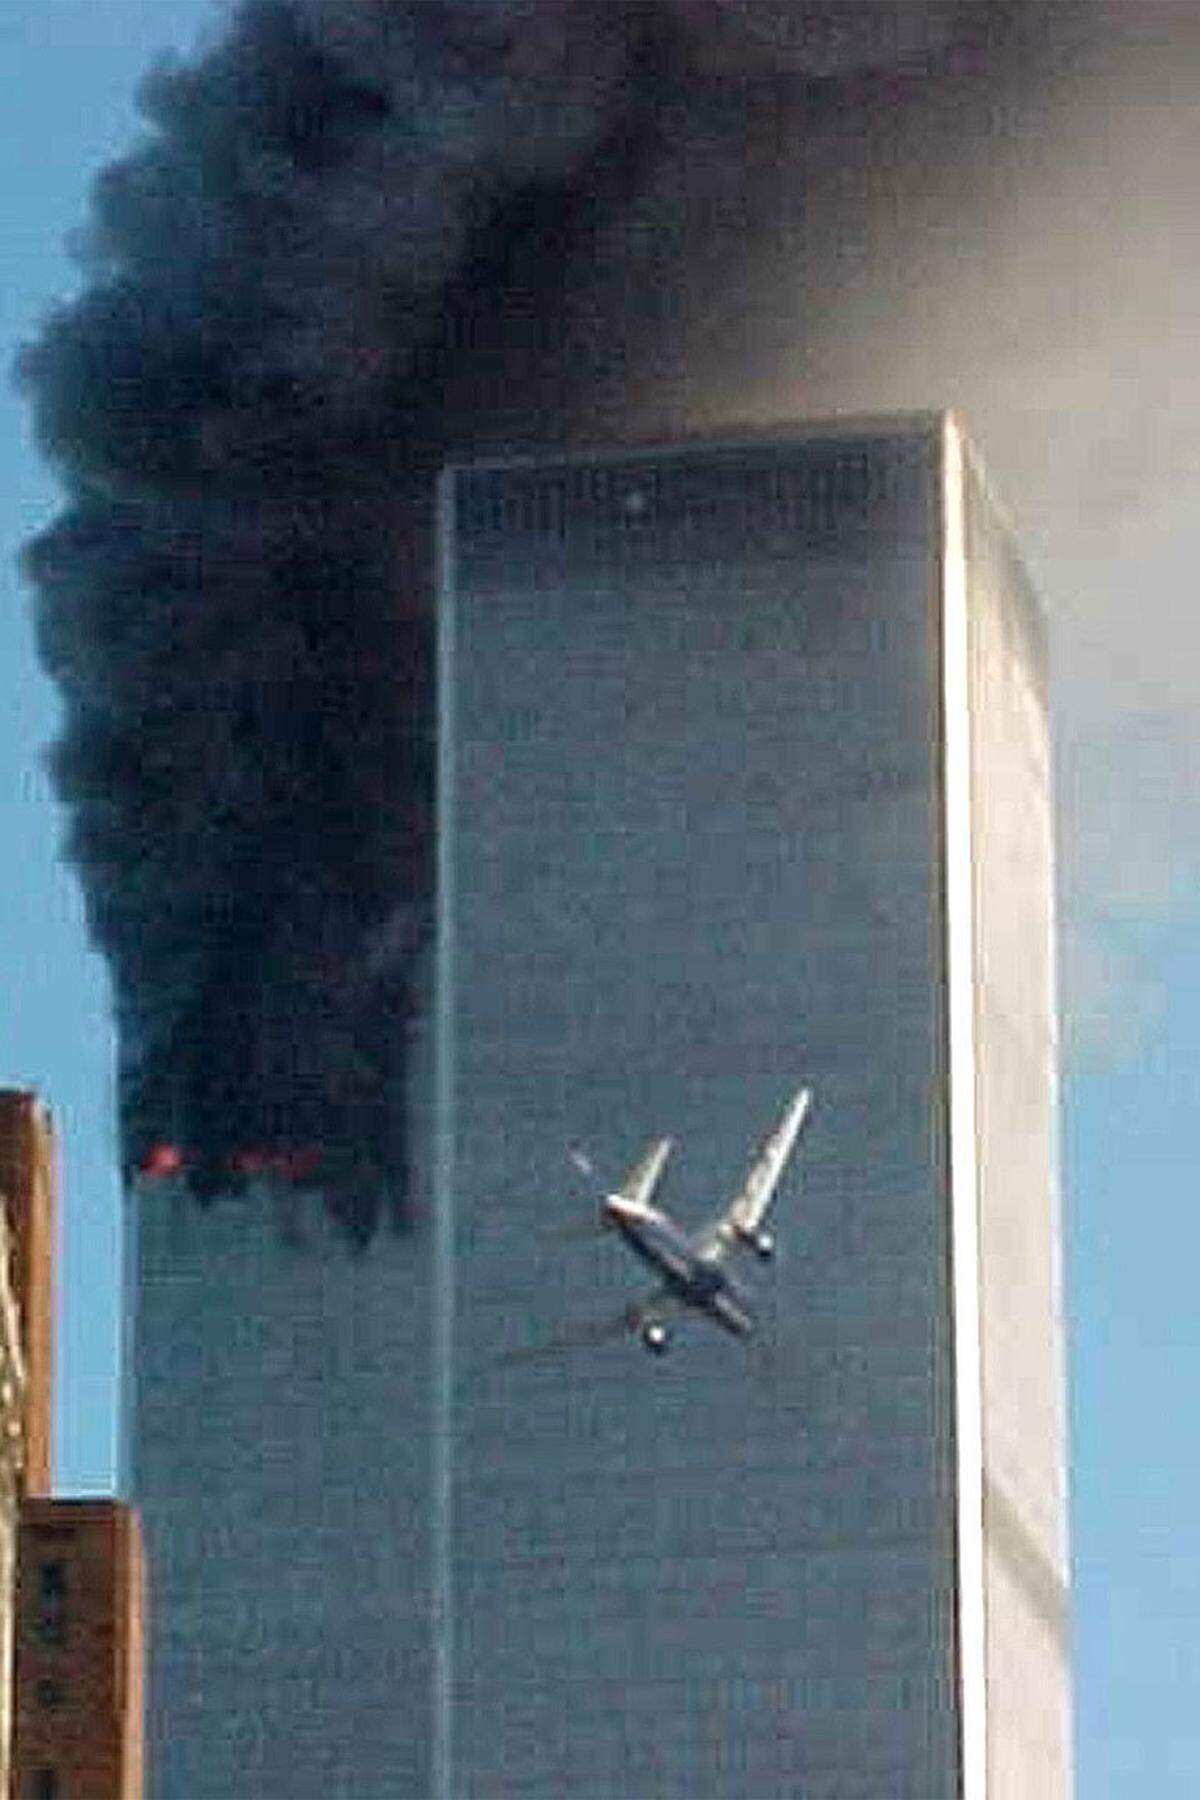 11. September 2001: Der Tag, an dem Amerika den Atem anhält. Um 8:46 Uhr kracht der American Airlines Flug 11 in den Nordturm des World Trade Centers. Zunächst wird ein schrecklicher Unfall vermutet. 17 Minuten später sieht eine entsetzte Weltöffentlichkeit live, wie sich ein zweiter Passagierflieger (Bild) in den Nordturm bohrt.